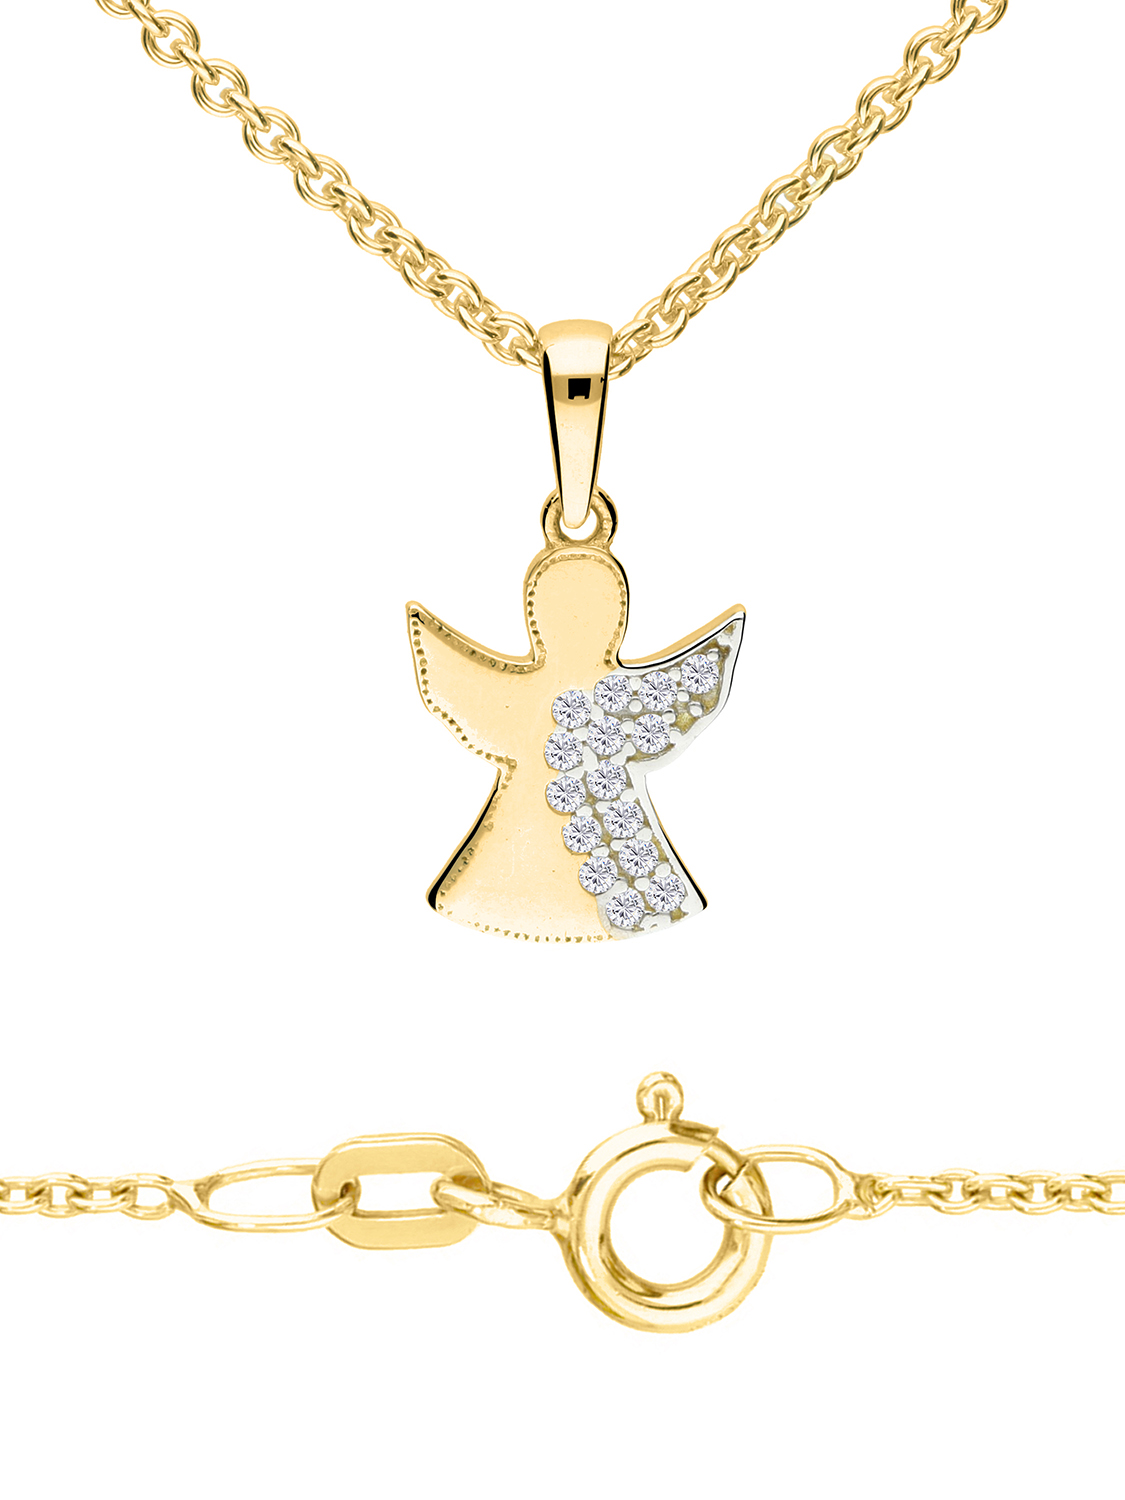 Halskette & Anhänger für Mädchen aus echtem Gelbgold mit Zirkonia - Sweet Angel | Detailansicht mit Verschluss